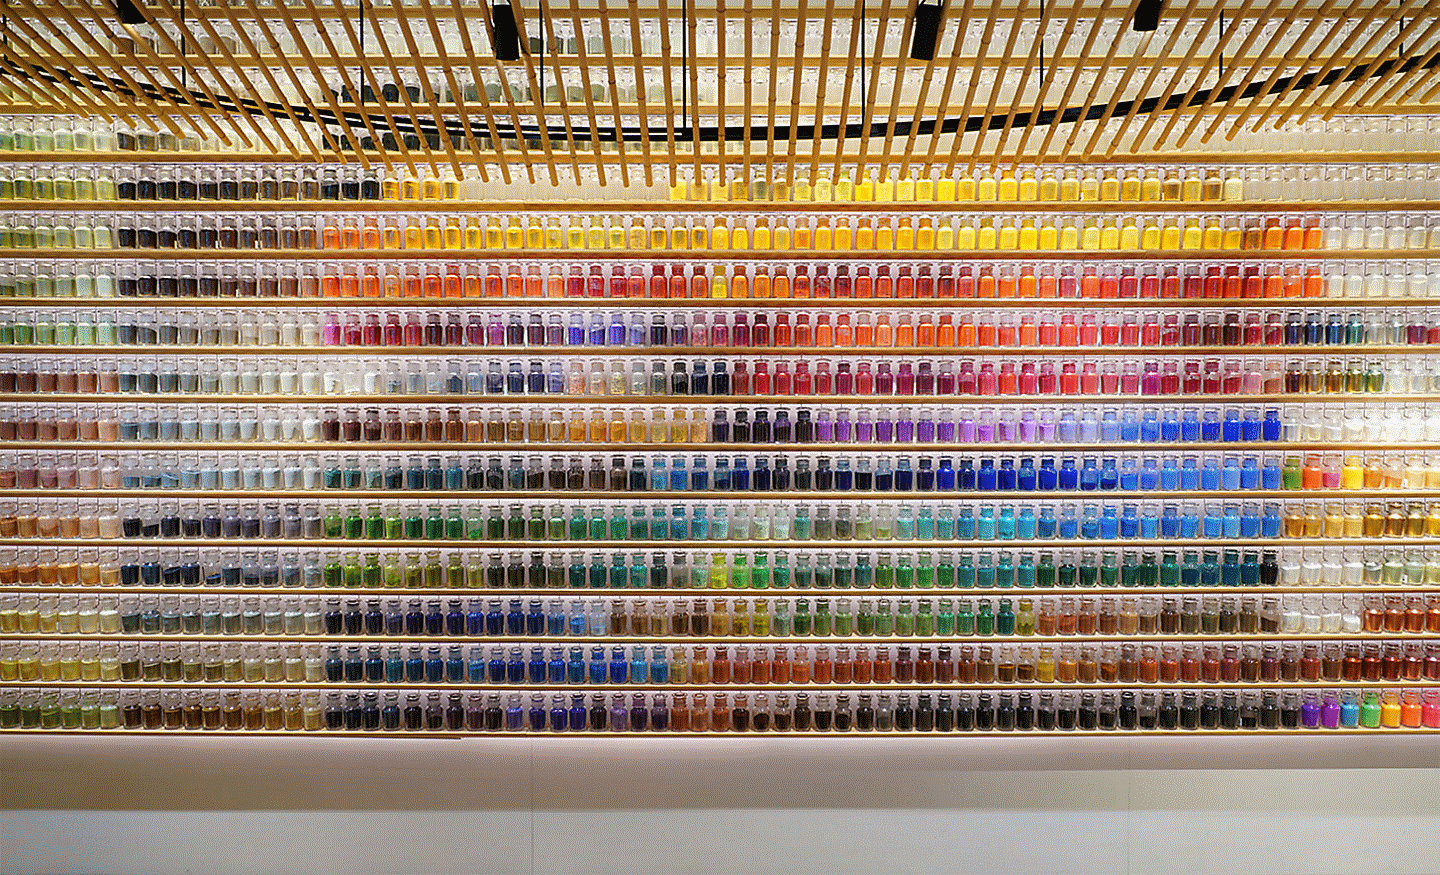 Imagen de ejemplo de una pared llena de botellas coloridas